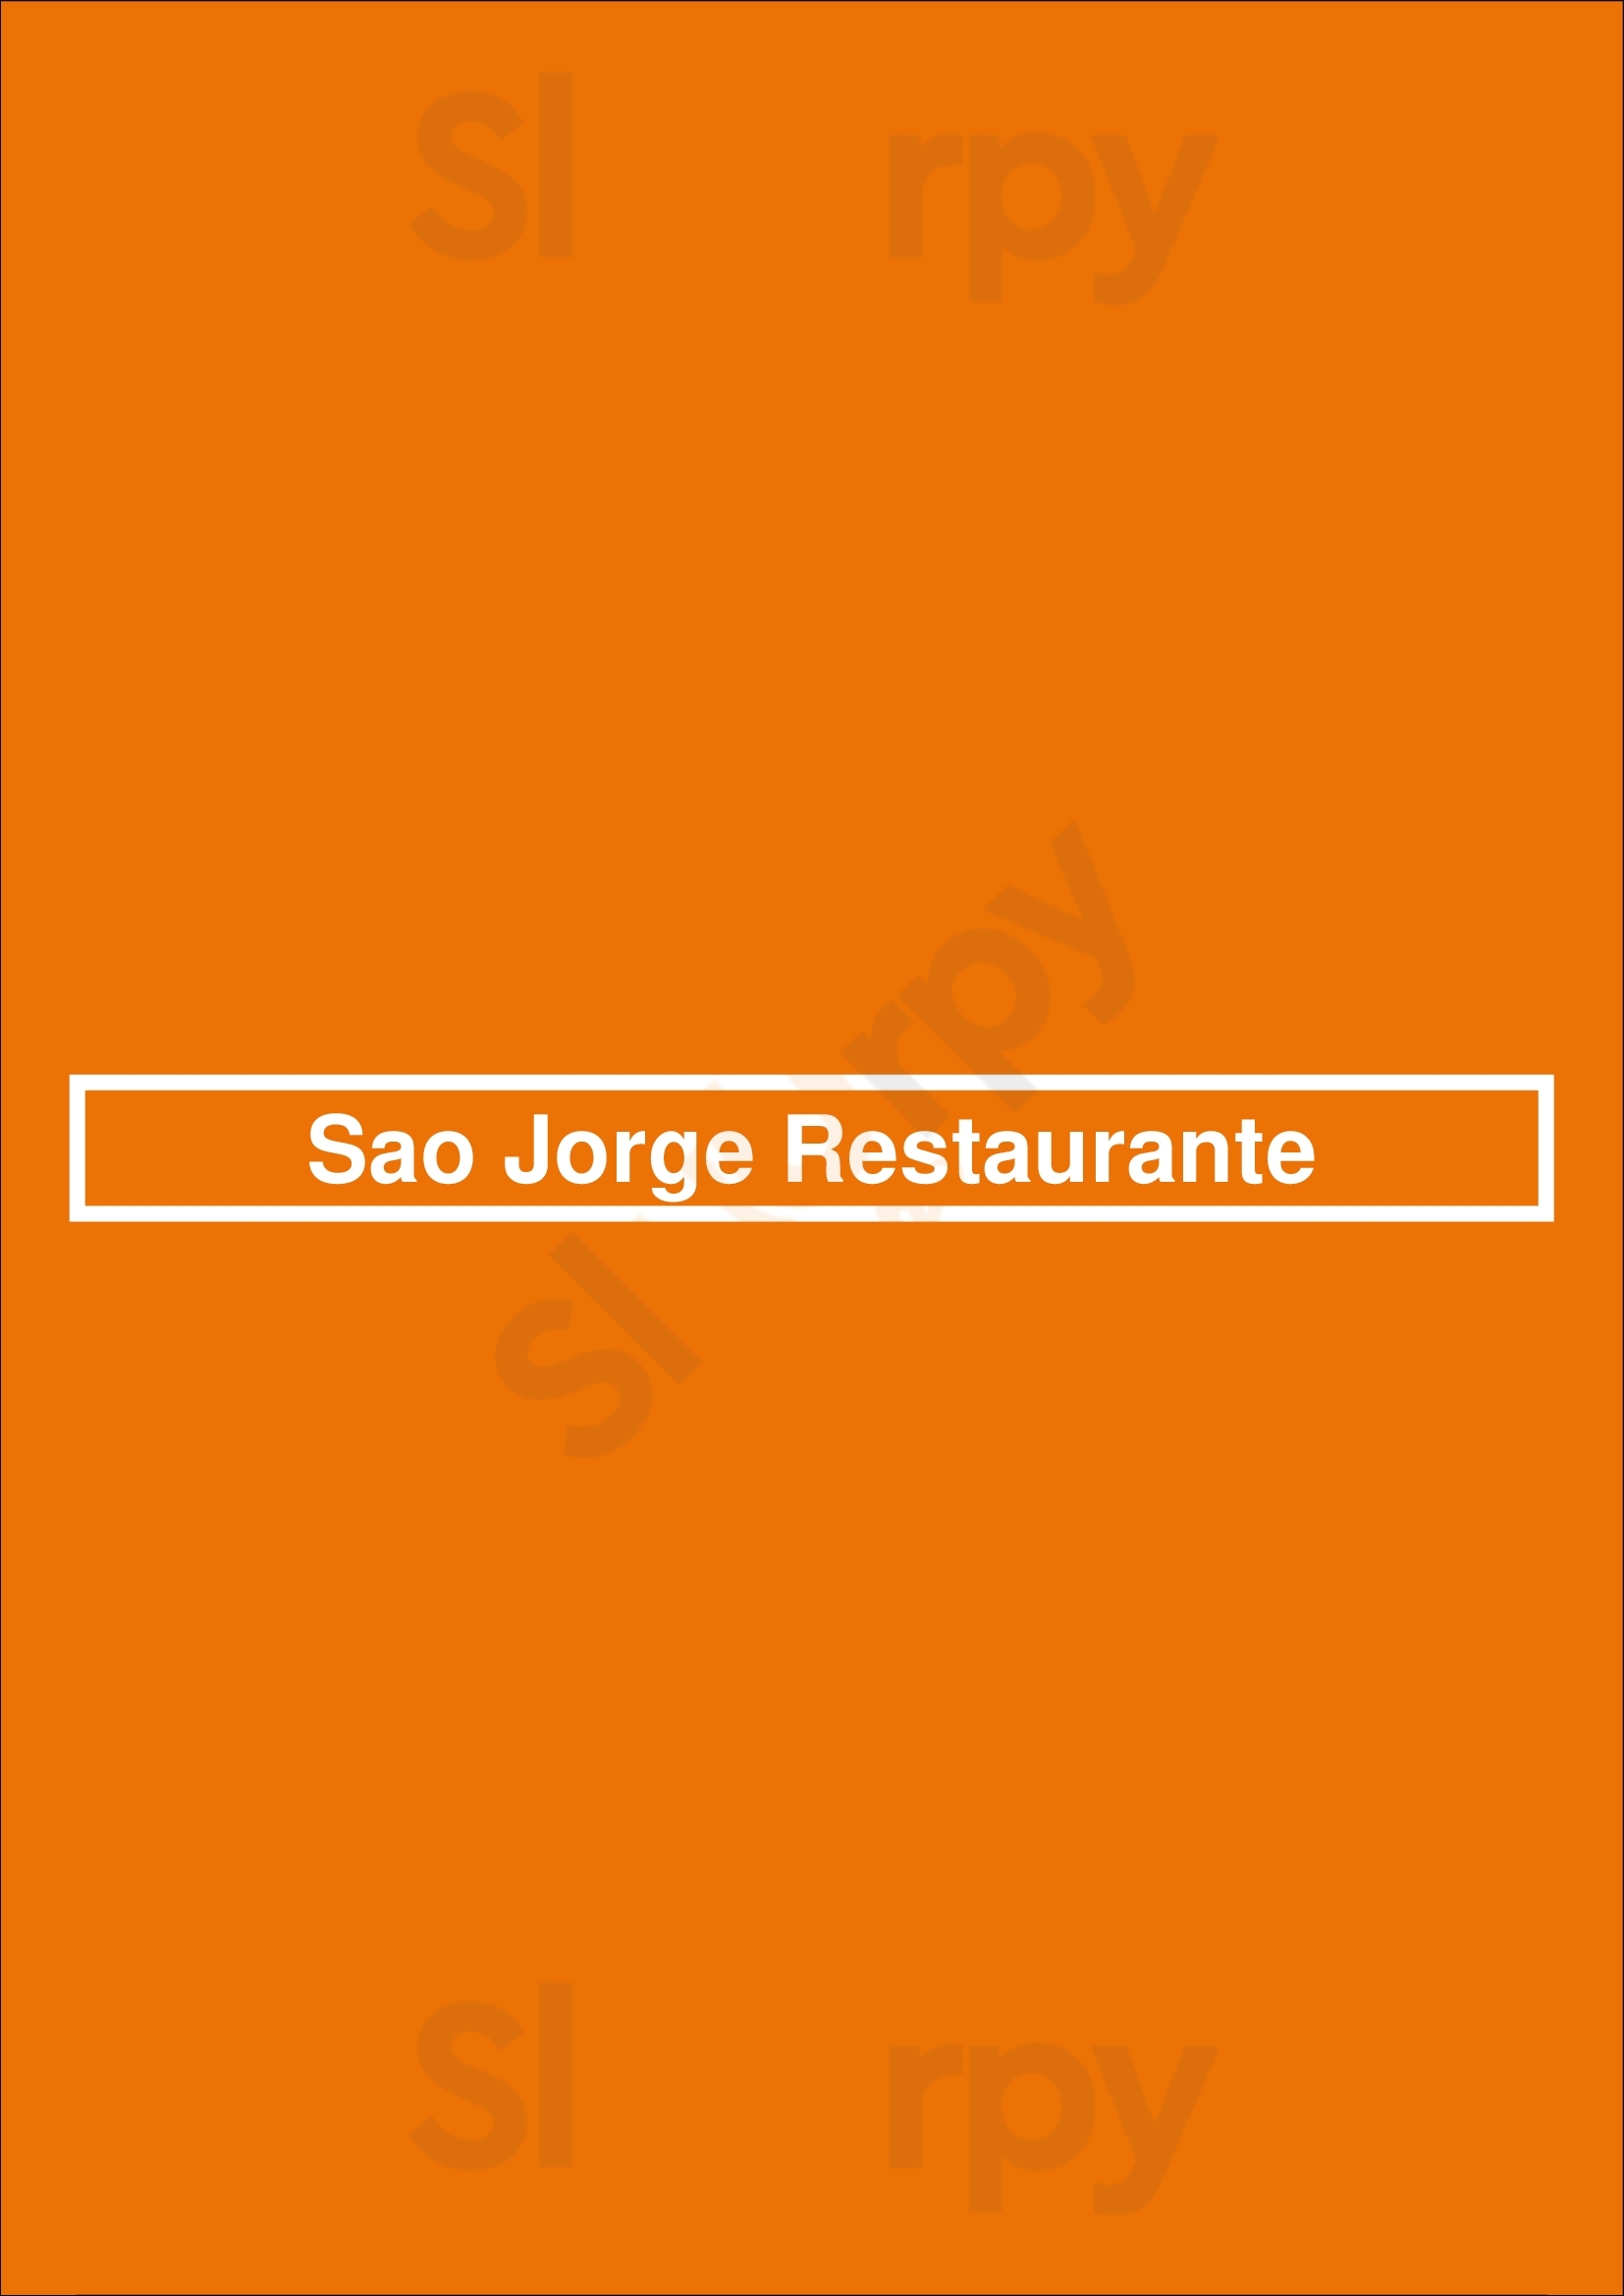 São Jorge Restaurante Lisboa Menu - 1